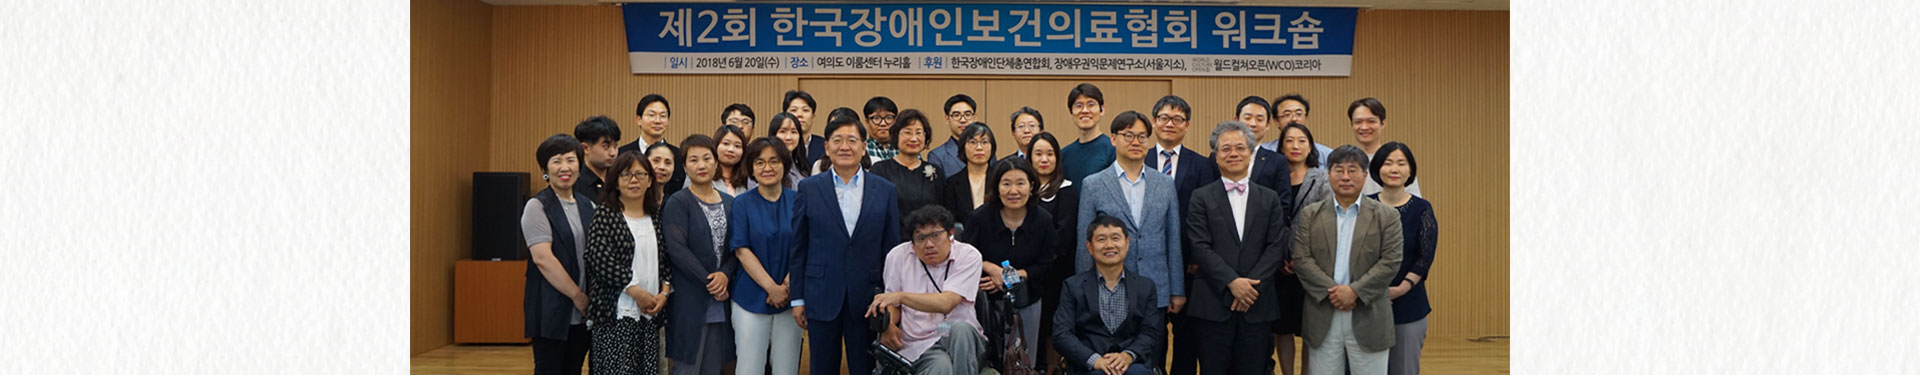 한국장애인보건의료협의회와 함께 새로운 희망을 키워나갑니다